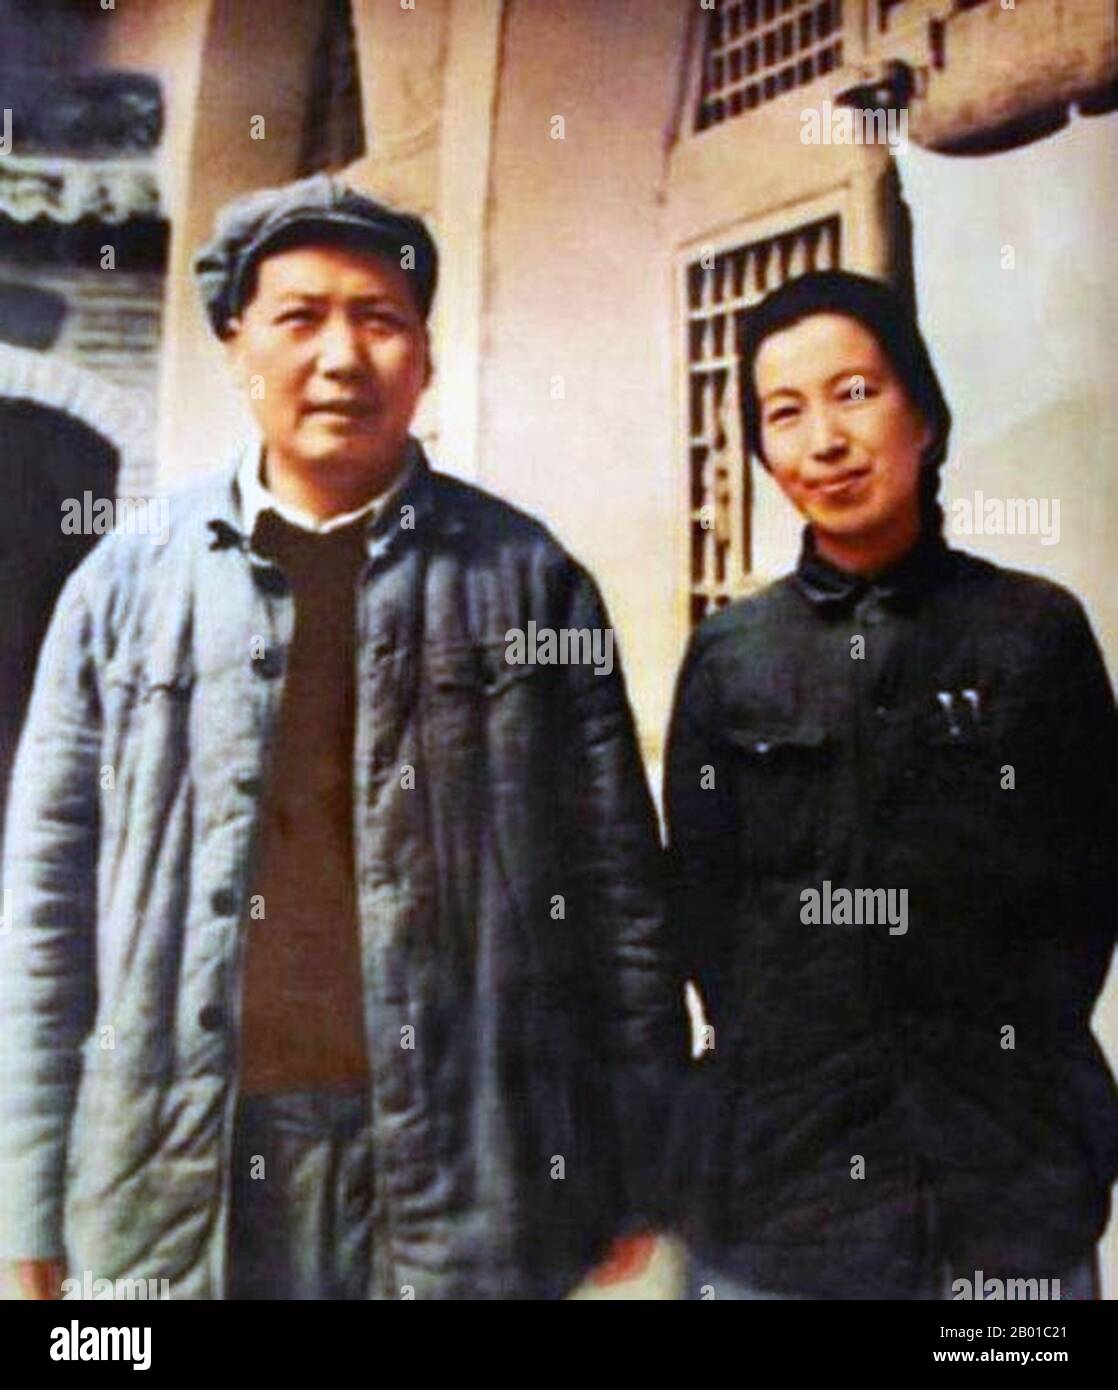 Chine : Mao Tsé-toung (26 décembre 1893 - 9 septembre 1976) avec sa quatrième femme, Jiang Qing (19 mars 1914 - 14 mai 1991), souvent appelée « maame Mao », en 1946. Jiang Qing (Chiang CH'ing) était le pseudonyme utilisé par la dernière femme du dirigeant chinois Mao Tsé-toung et la figure de pouvoir majeure du Parti communiste chinois. Elle est allée par le nom de scène LAN Ping au cours de sa carrière d'acteur, et a été connu par divers autres noms pendant sa vie. Elle a épousé Mao à Ya'an en novembre 1938, et est parfois appelée Madame Mao dans la littérature occidentale, servant de première dame de la Chine communiste. Banque D'Images